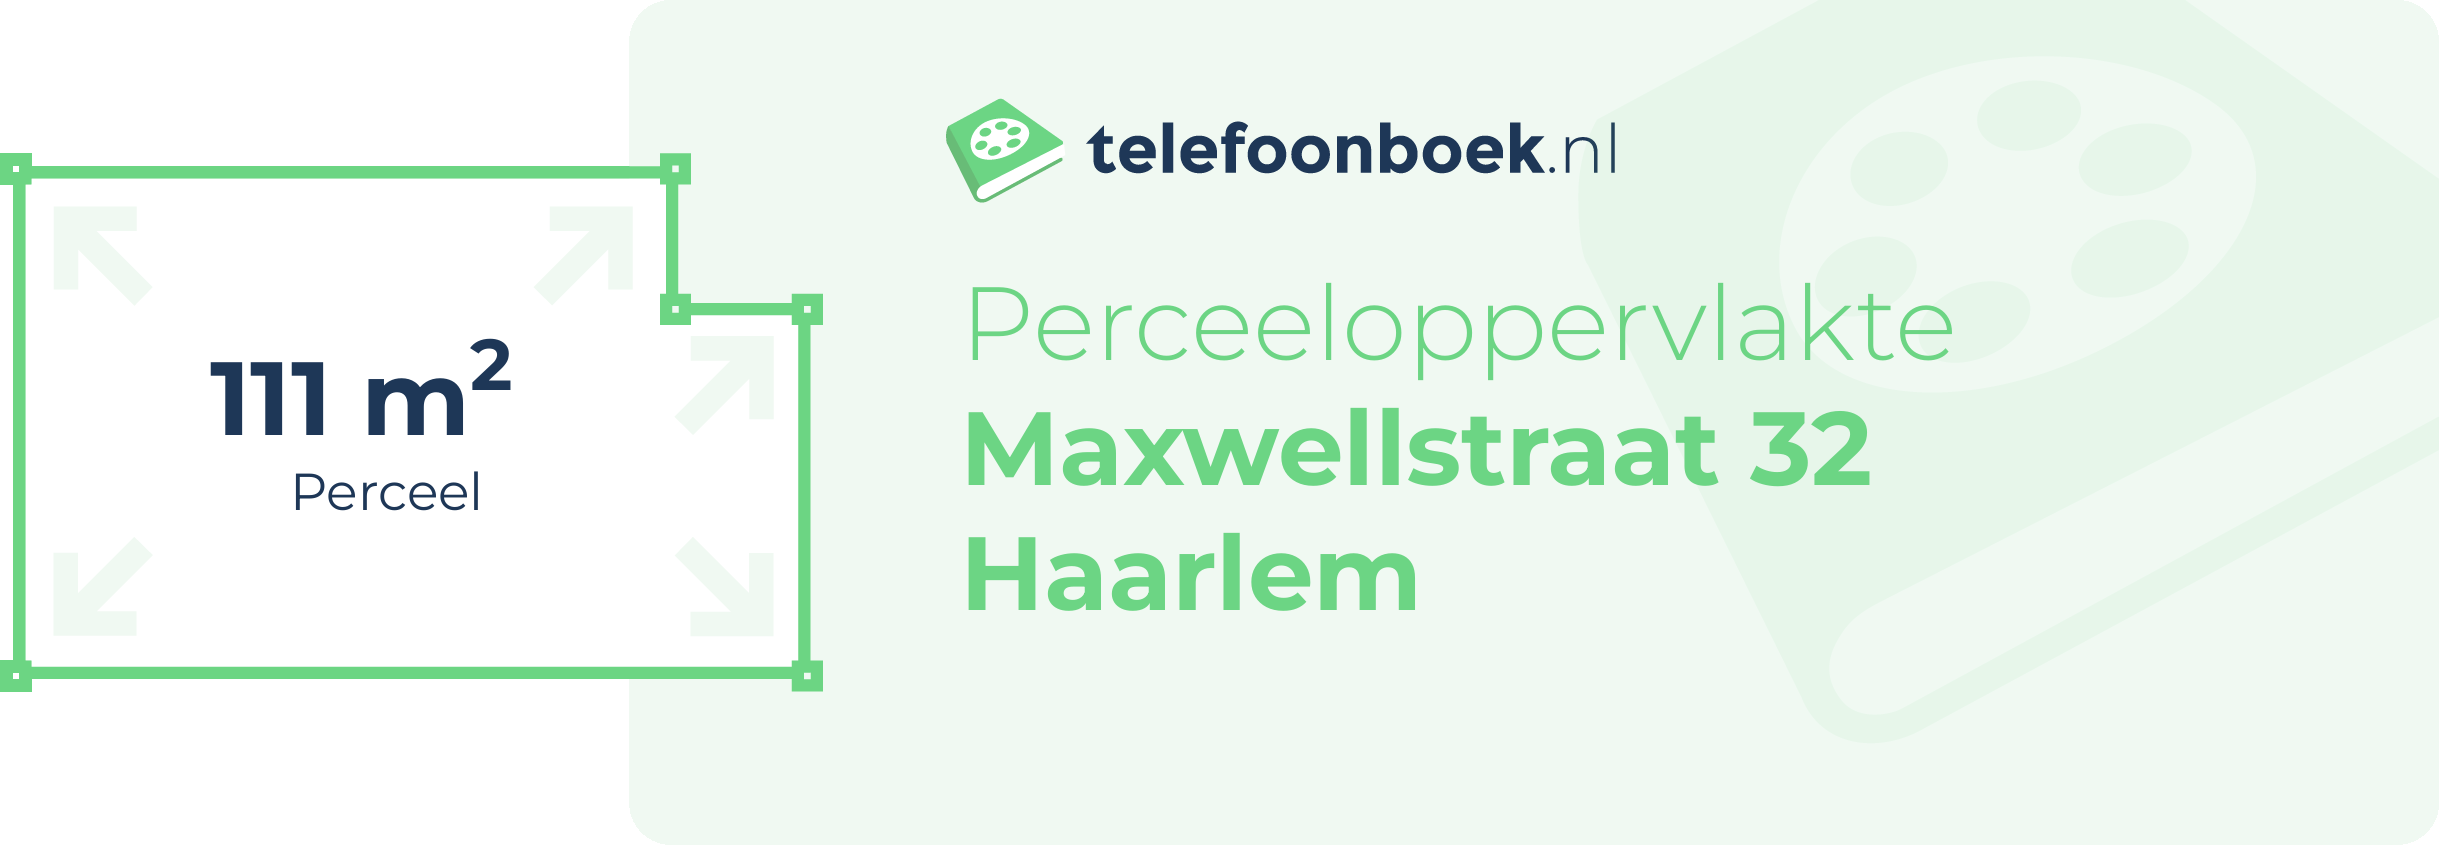 Perceeloppervlakte Maxwellstraat 32 Haarlem